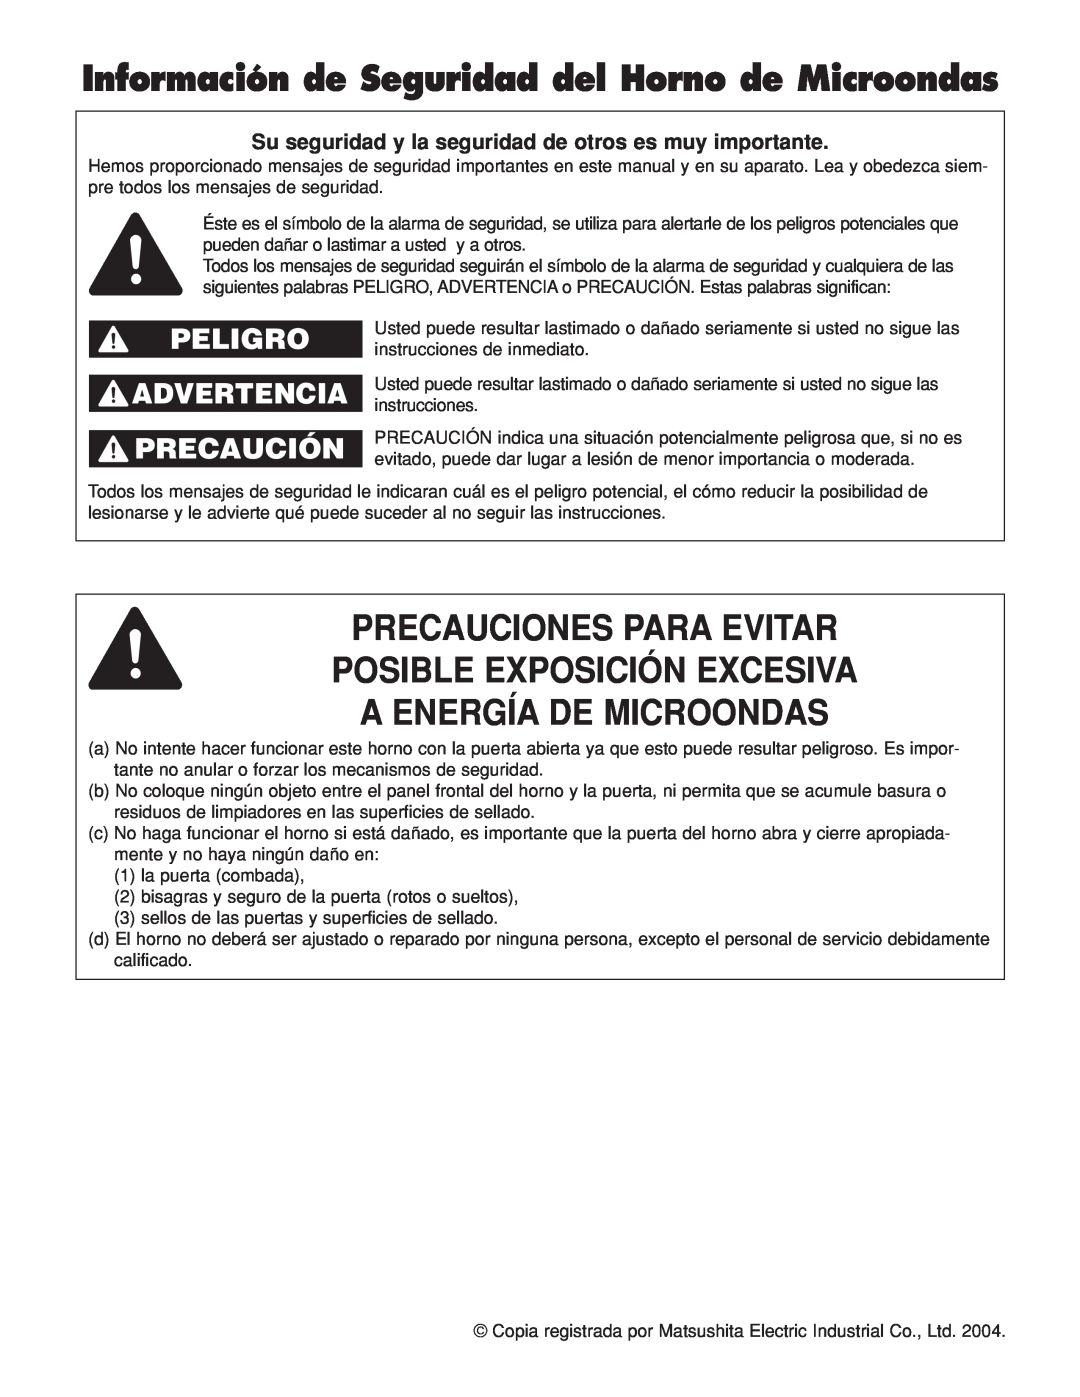 Panasonic NN-H264 Información de Seguridad del Horno de Microondas, Precauciones Para Evitar, Posible Exposición Excesiva 